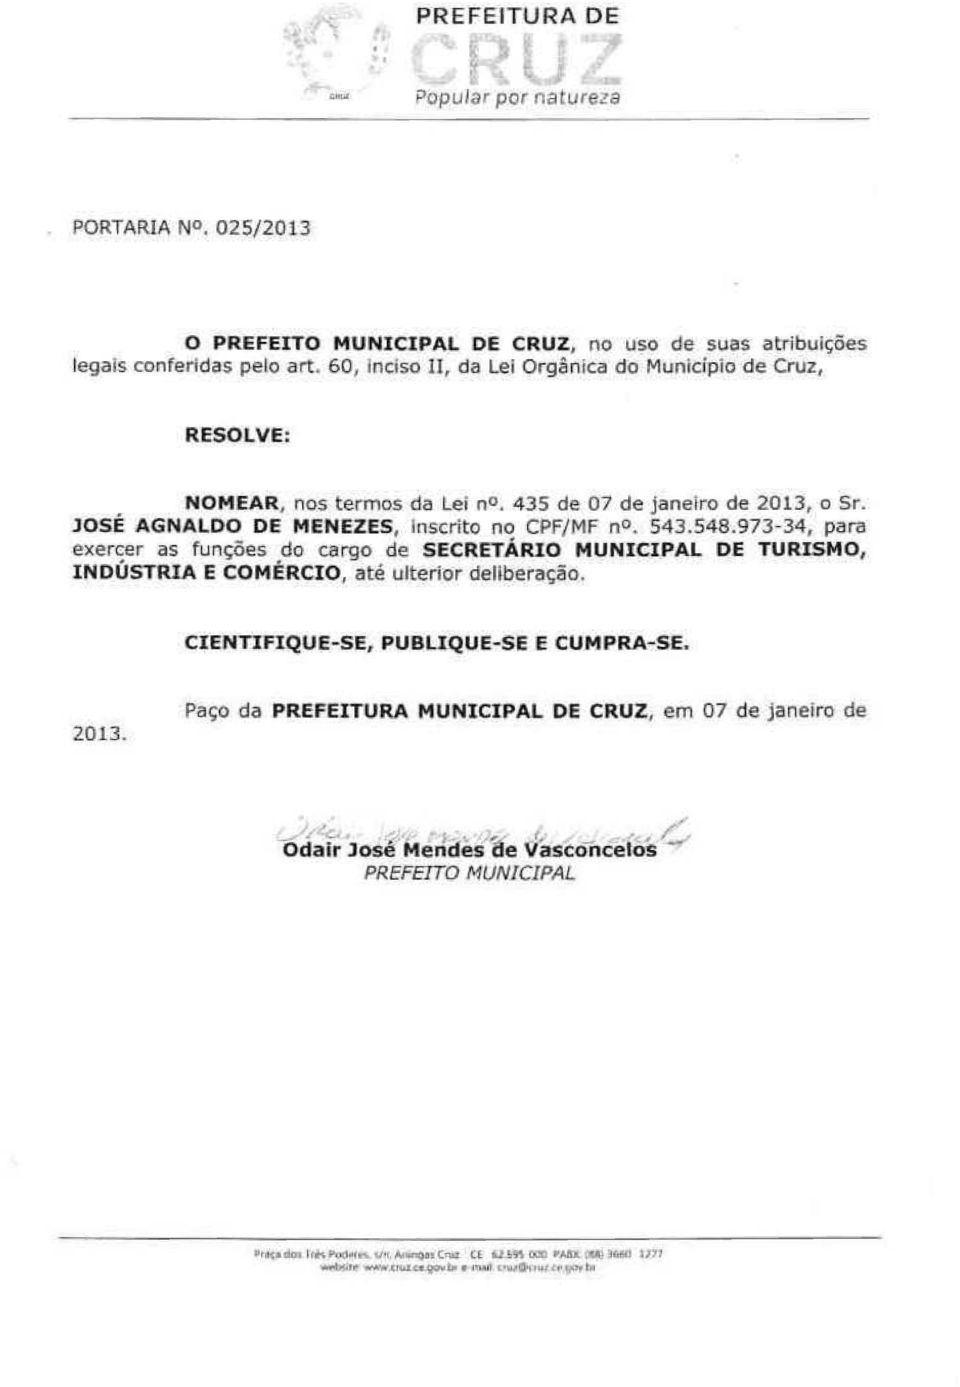 JOSÉ AGNALDO DE MENEZES, inscrito no CPF/MF n. 543.548.